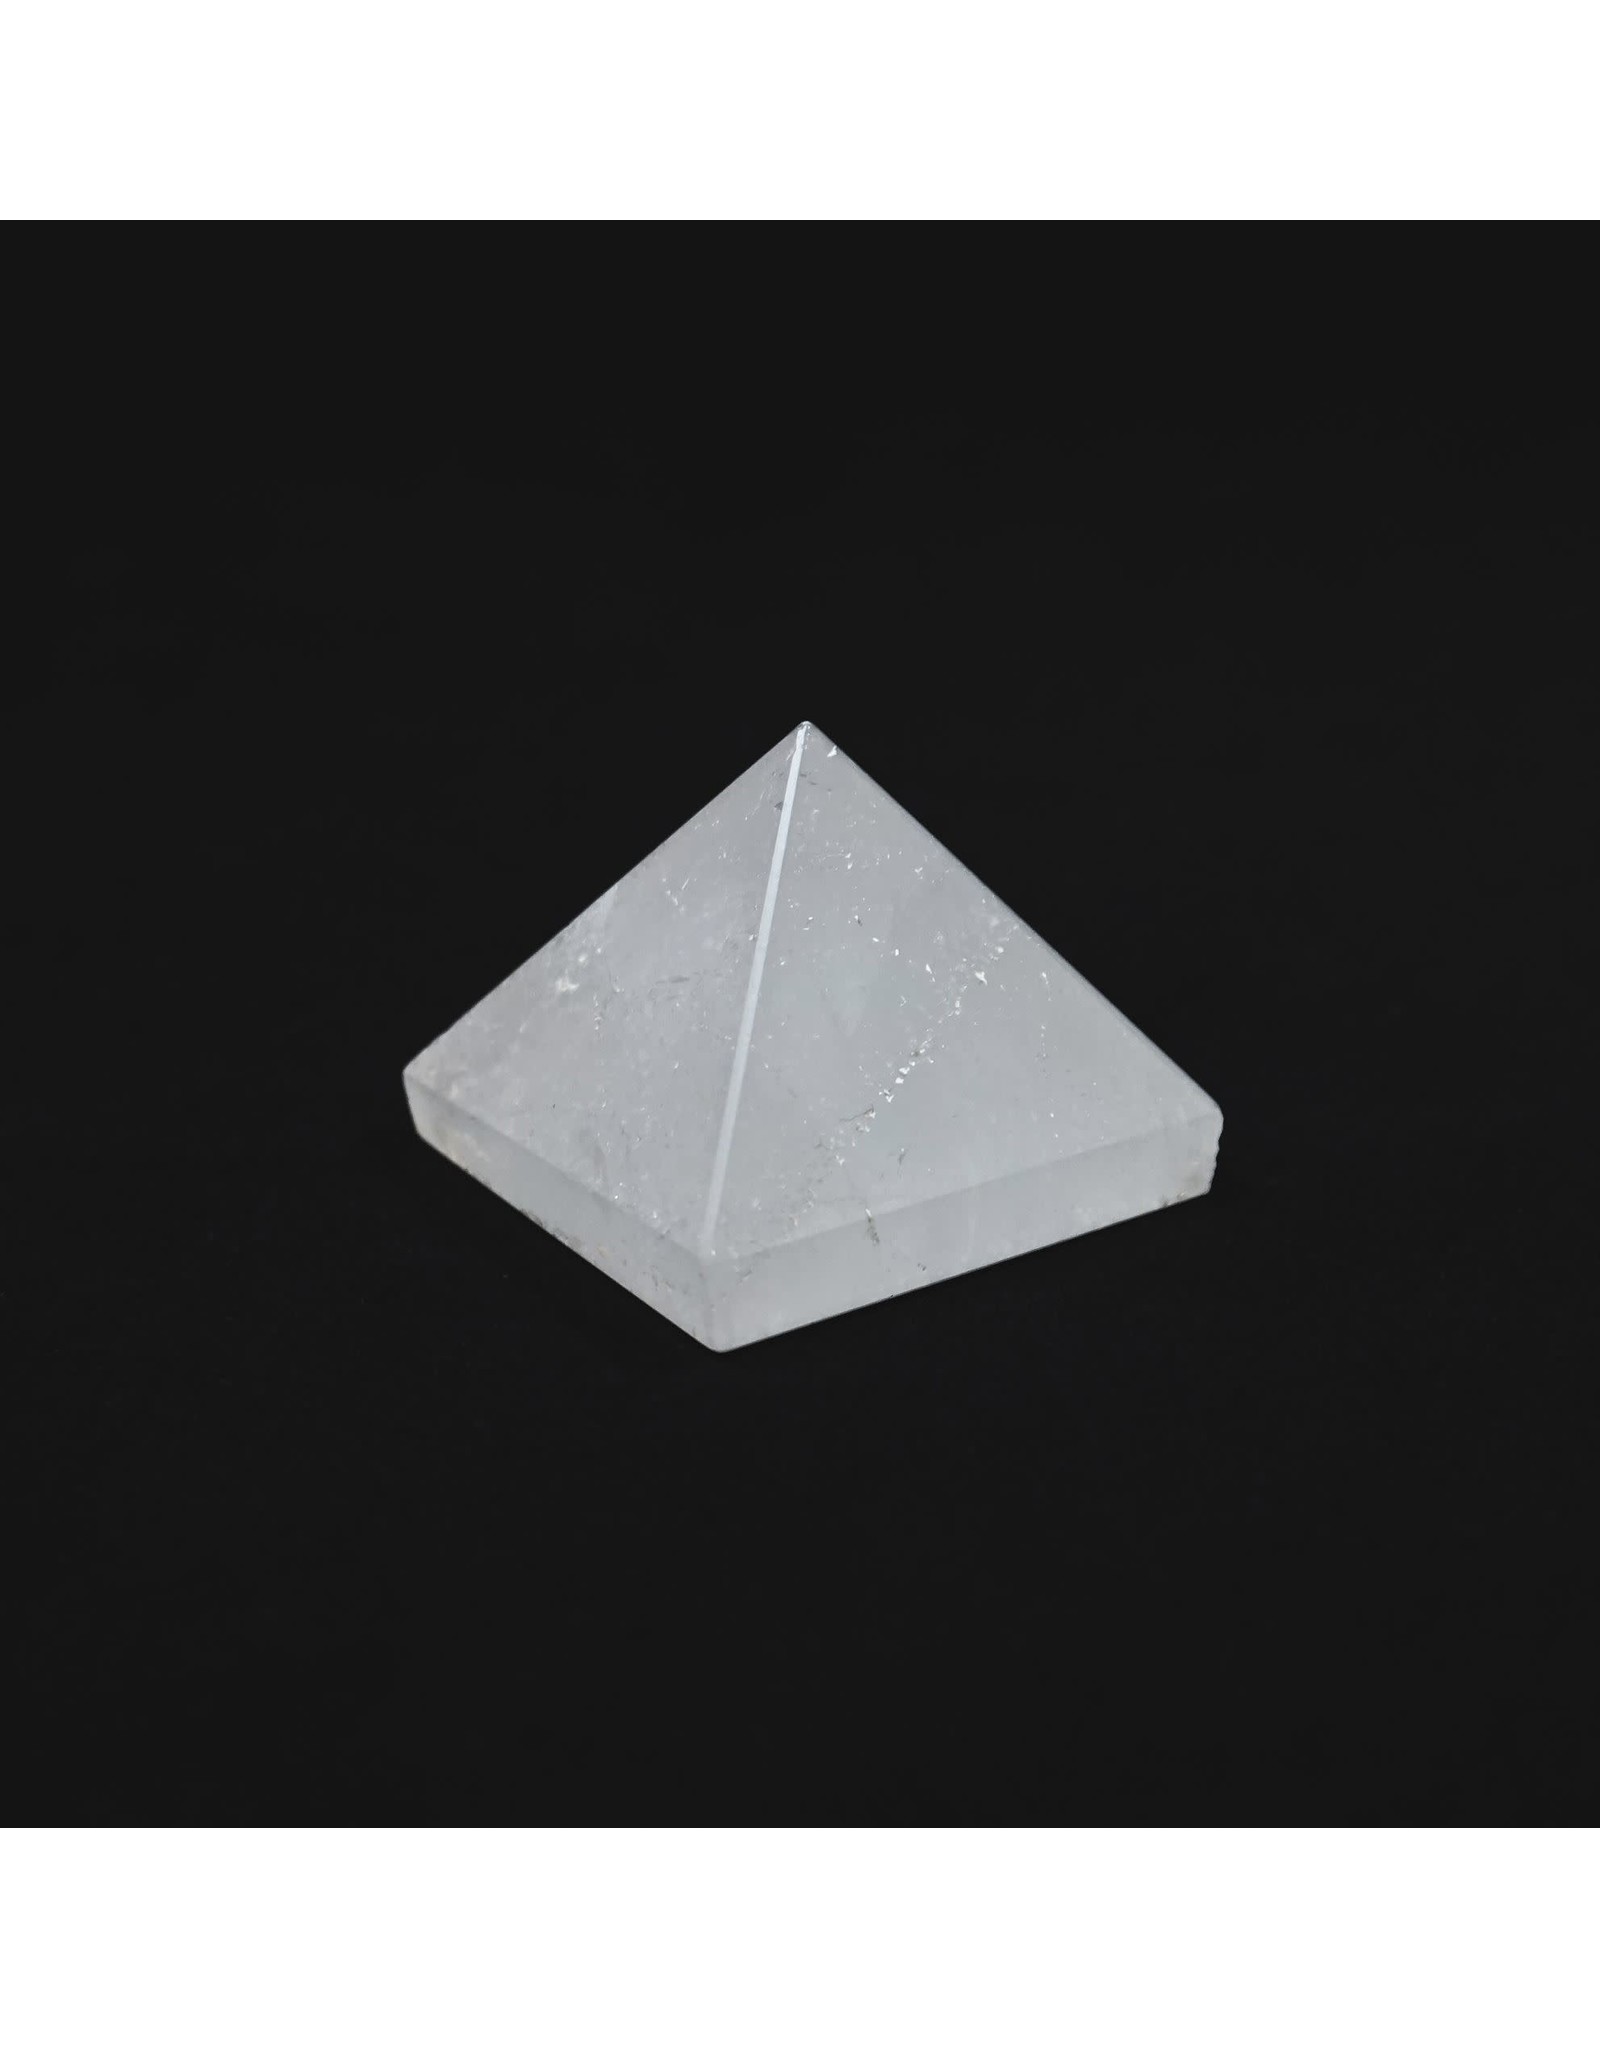 Gemstone Pyramid - Clear Quartz